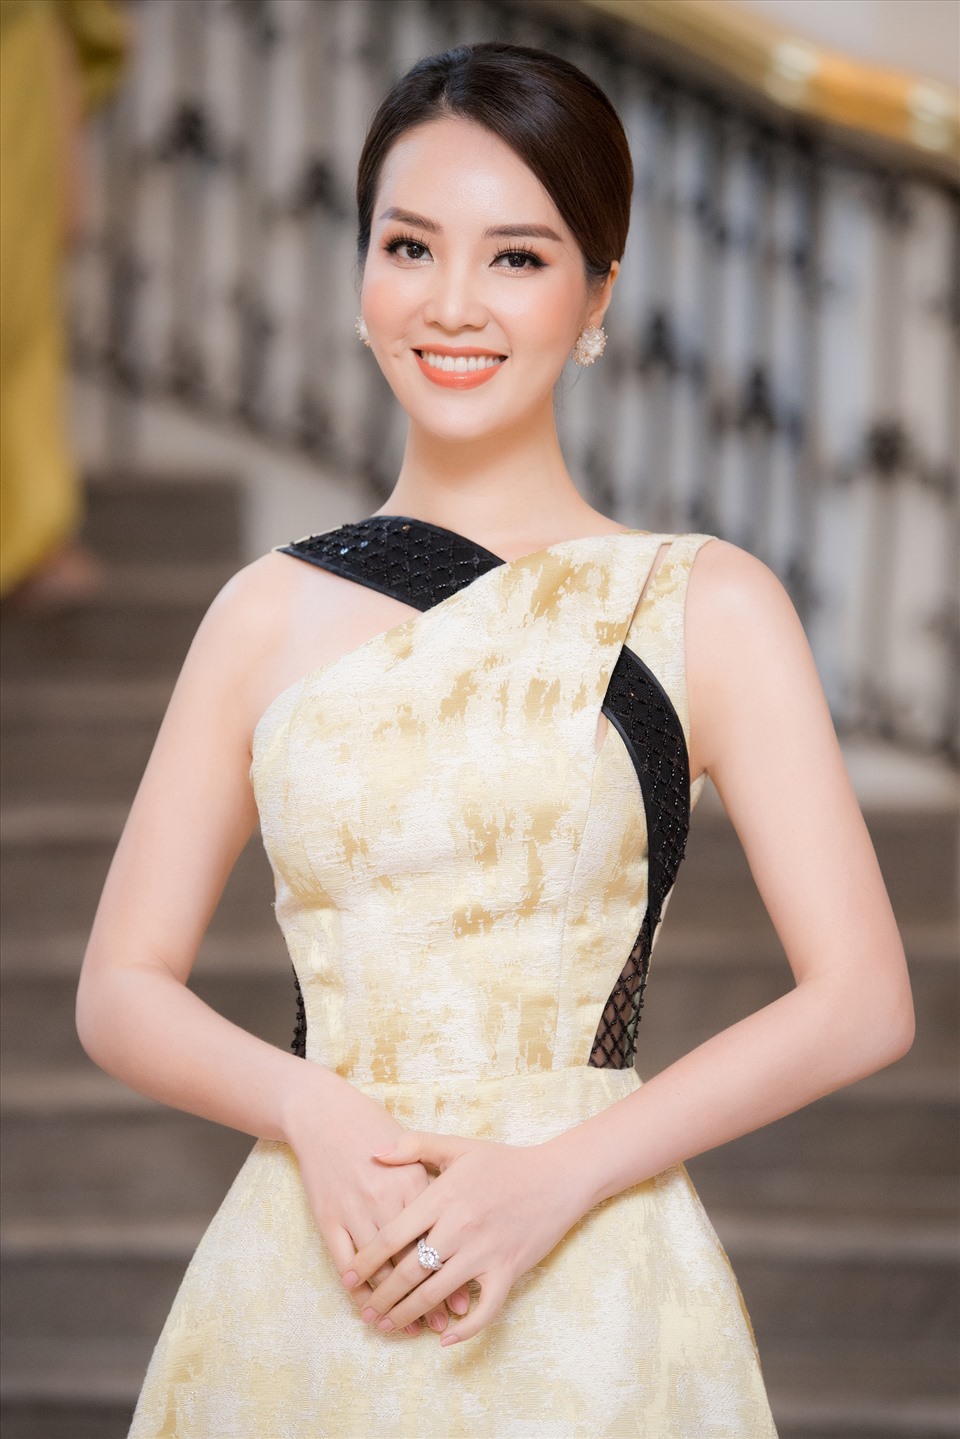 Năm nay, Á hậu Thuỵ Vân giữ vị trí người “cầm cân nảy mực“, là 1 trong 7 thành viên Ban giám khảo trực tiếp chọn ra tân Hoa hậu Việt Nam 2020. Ảnh: Toan Vu.